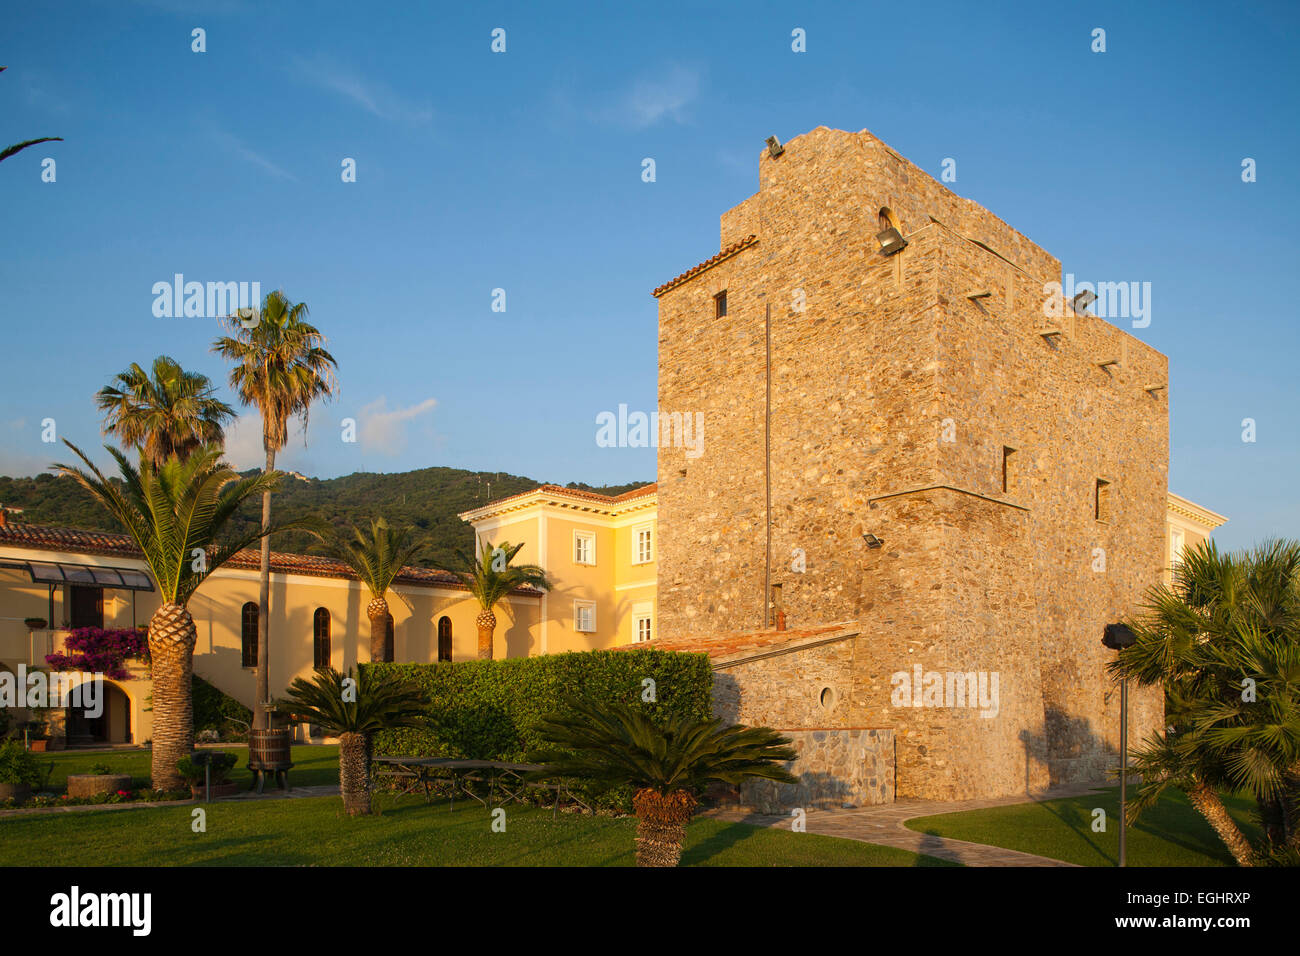 hotel palazzo del capo di bonifati, bay of capo bonifati, cittadella del capo, province of cosenza, italy, europe Stock Photo